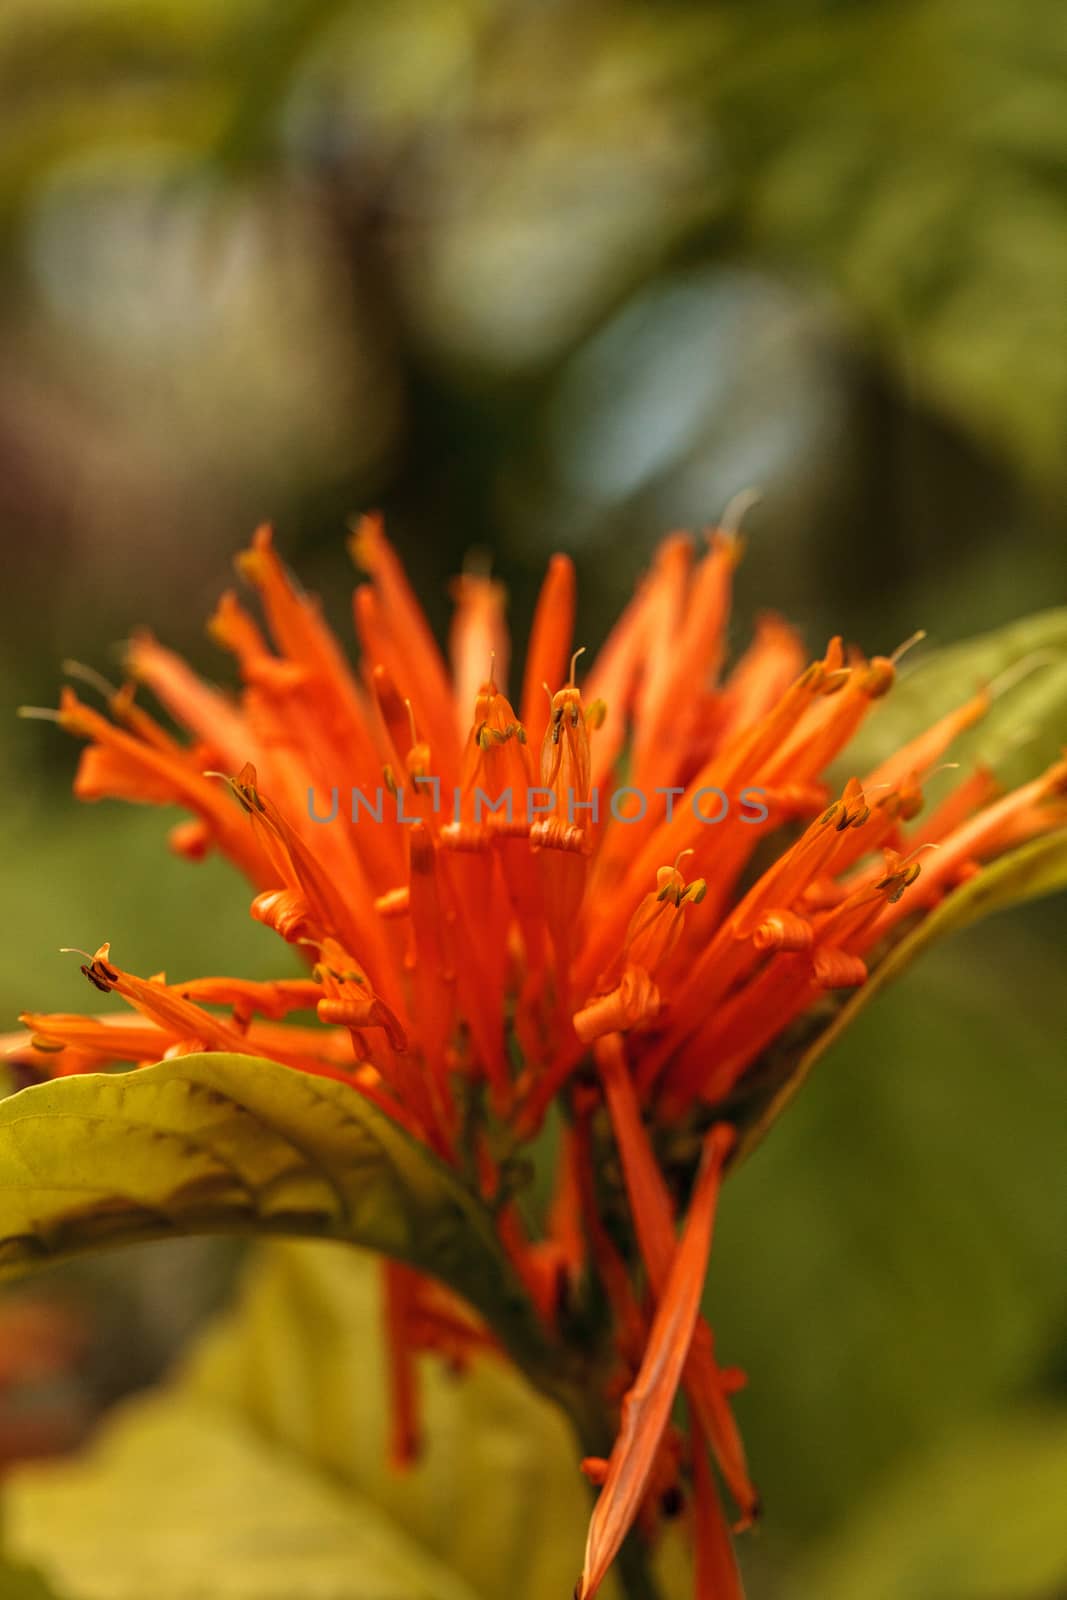 Orange Mexican honeysuckle Justicia sidicaro flower by steffstarr